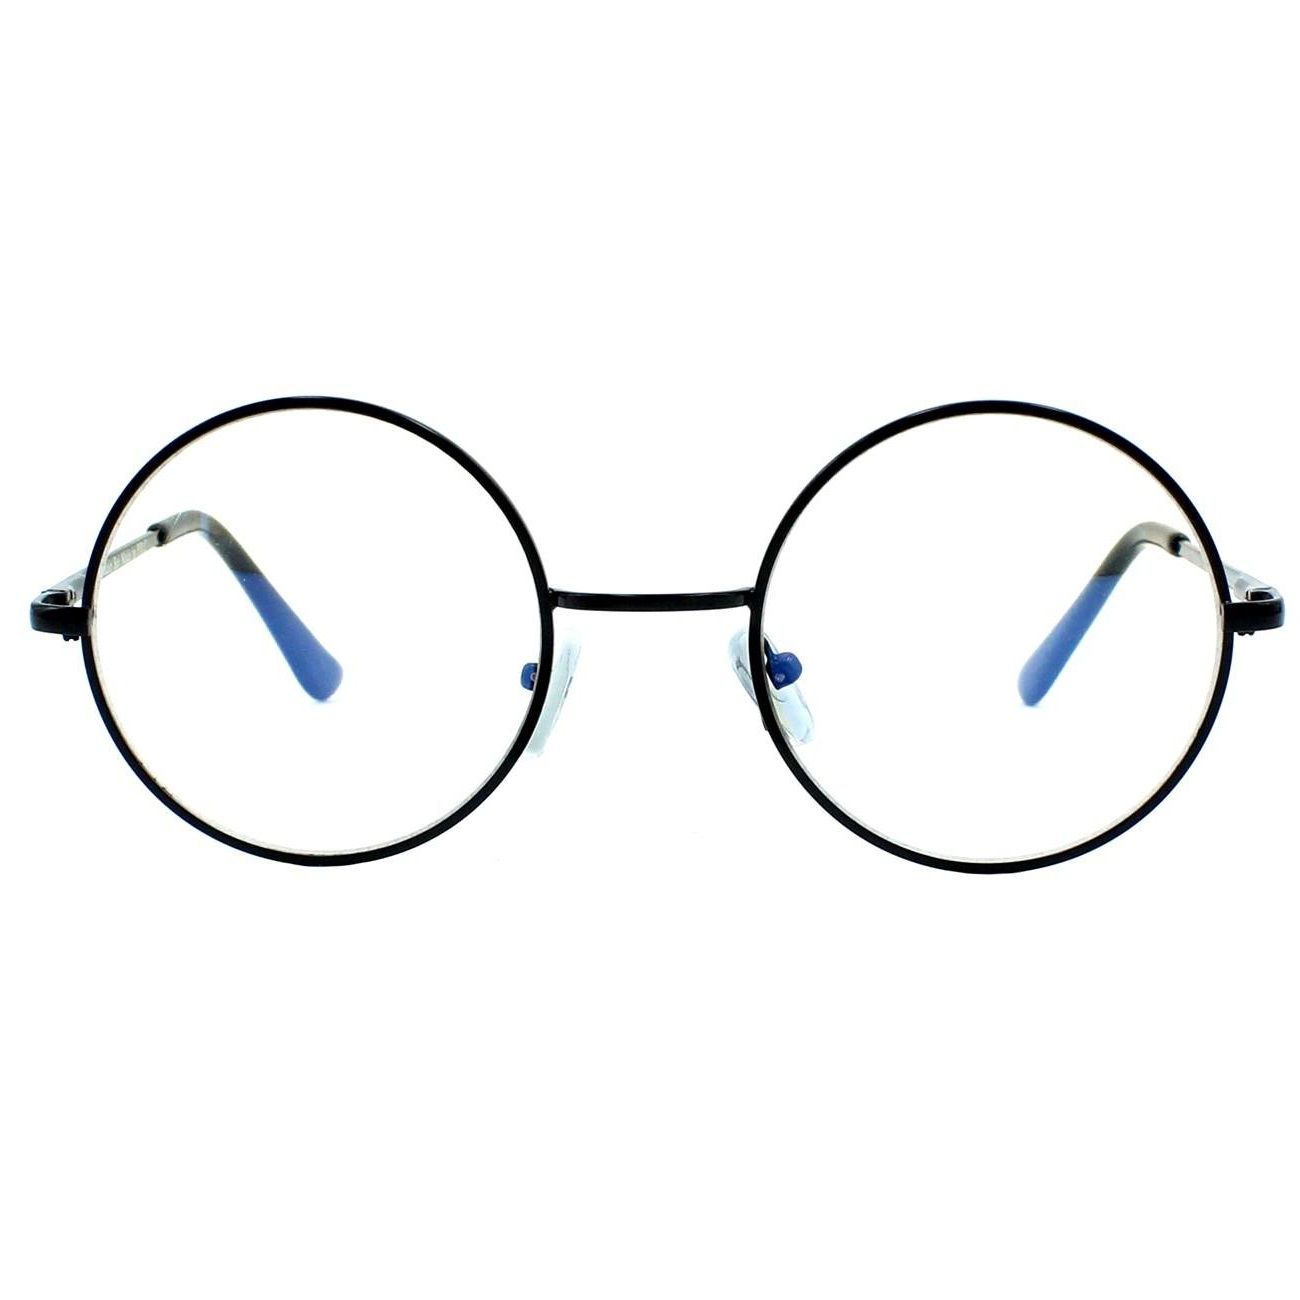 فریم عینک طبی مدل bw-100 -  - 1